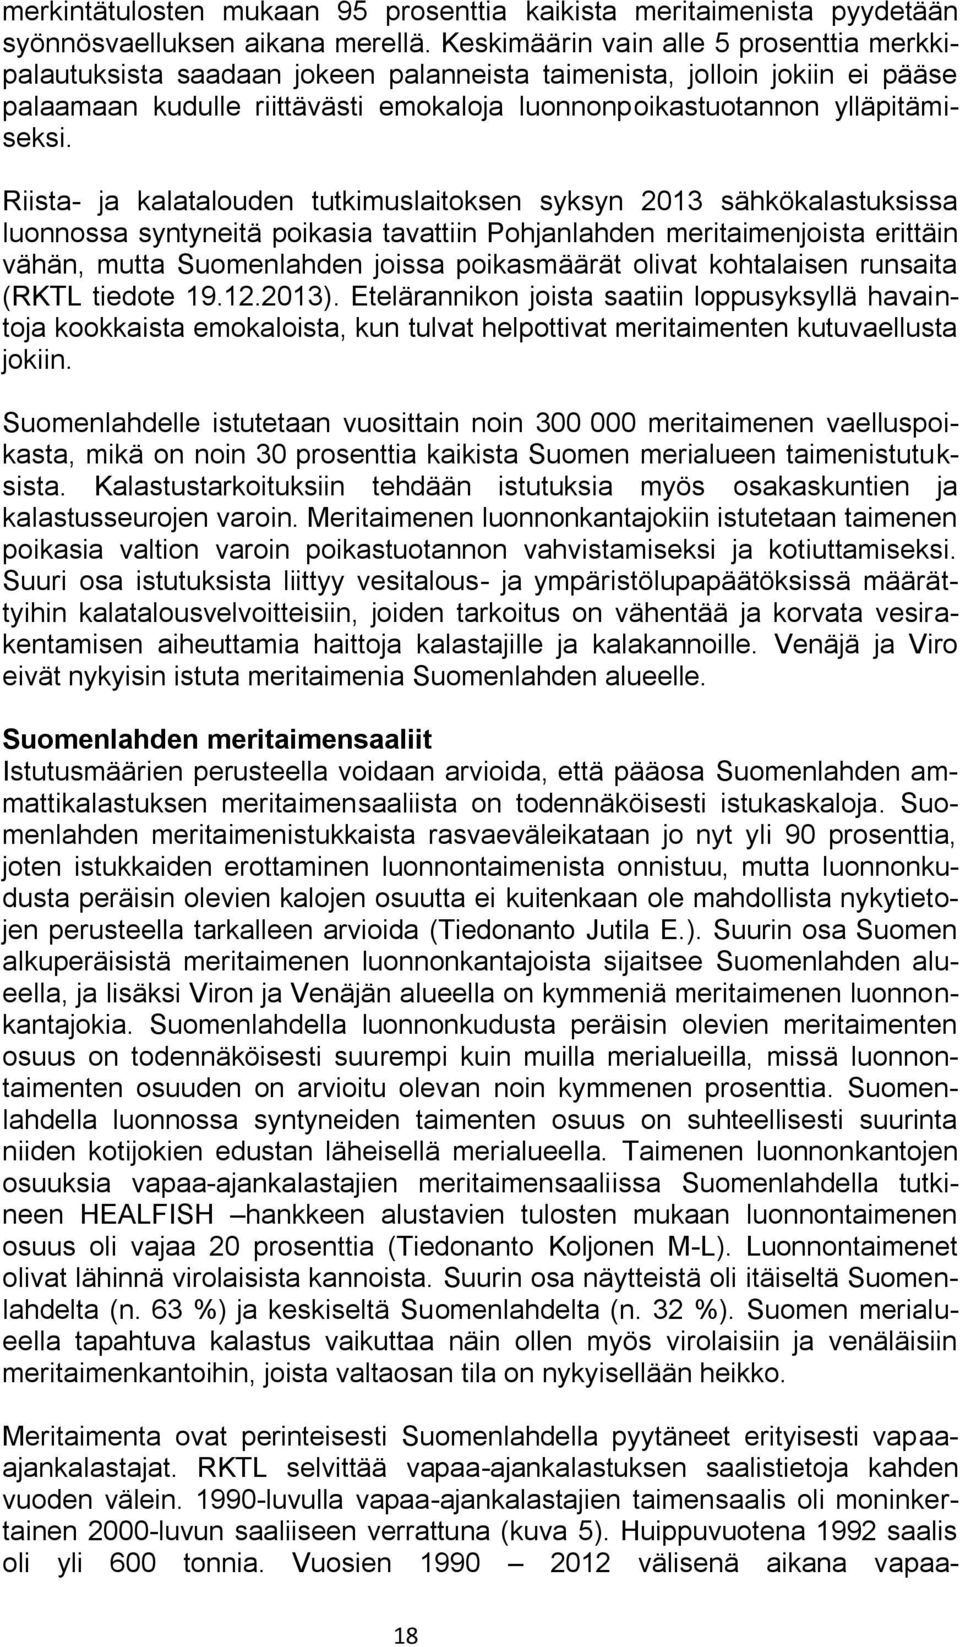 Riista- ja kalatalouden tutkimuslaitoksen syksyn 2013 sähkökalastuksissa luonnossa syntyneitä poikasia tavattiin Pohjanlahden meritaimenjoista erittäin vähän, mutta Suomenlahden joissa poikasmäärät